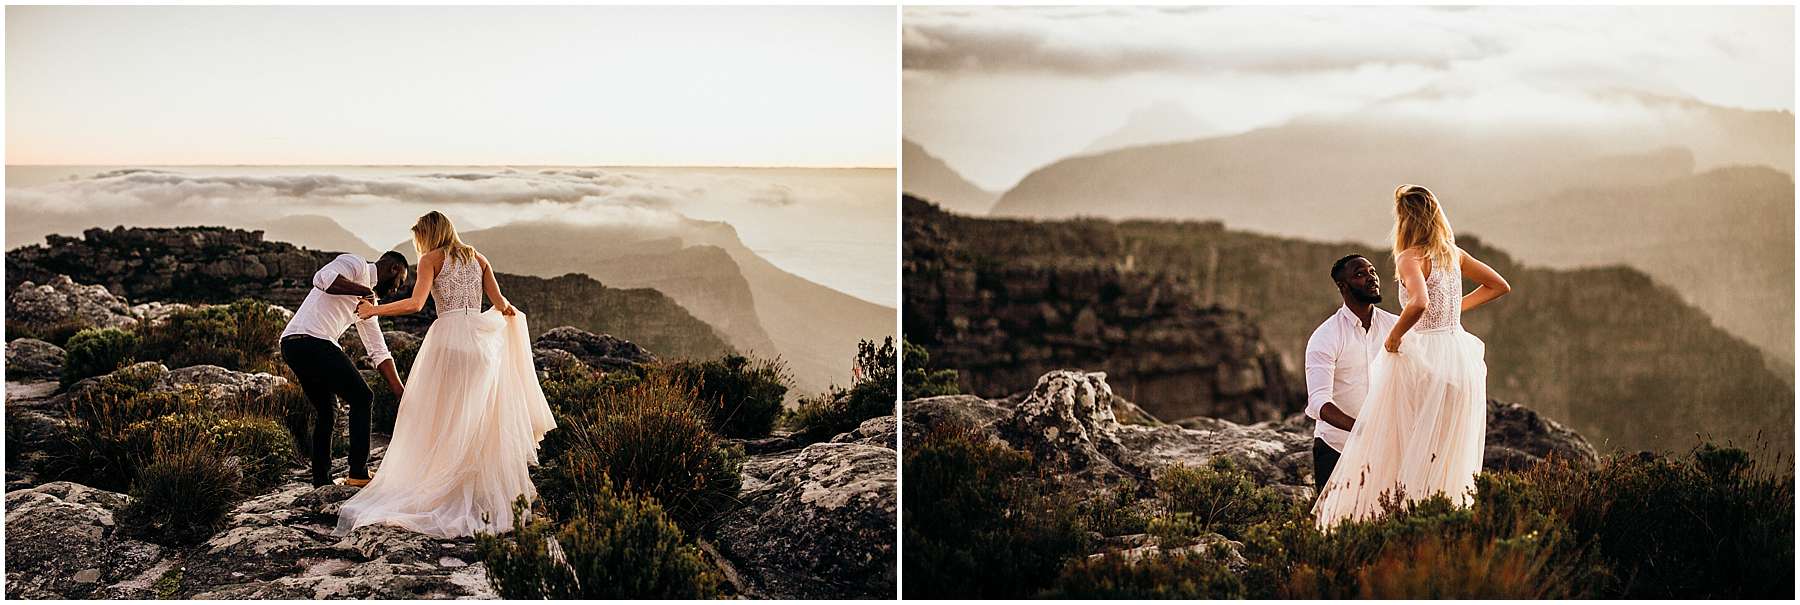 LOTTYH-South-Africa-Elopement-Photographer_0036.jpg